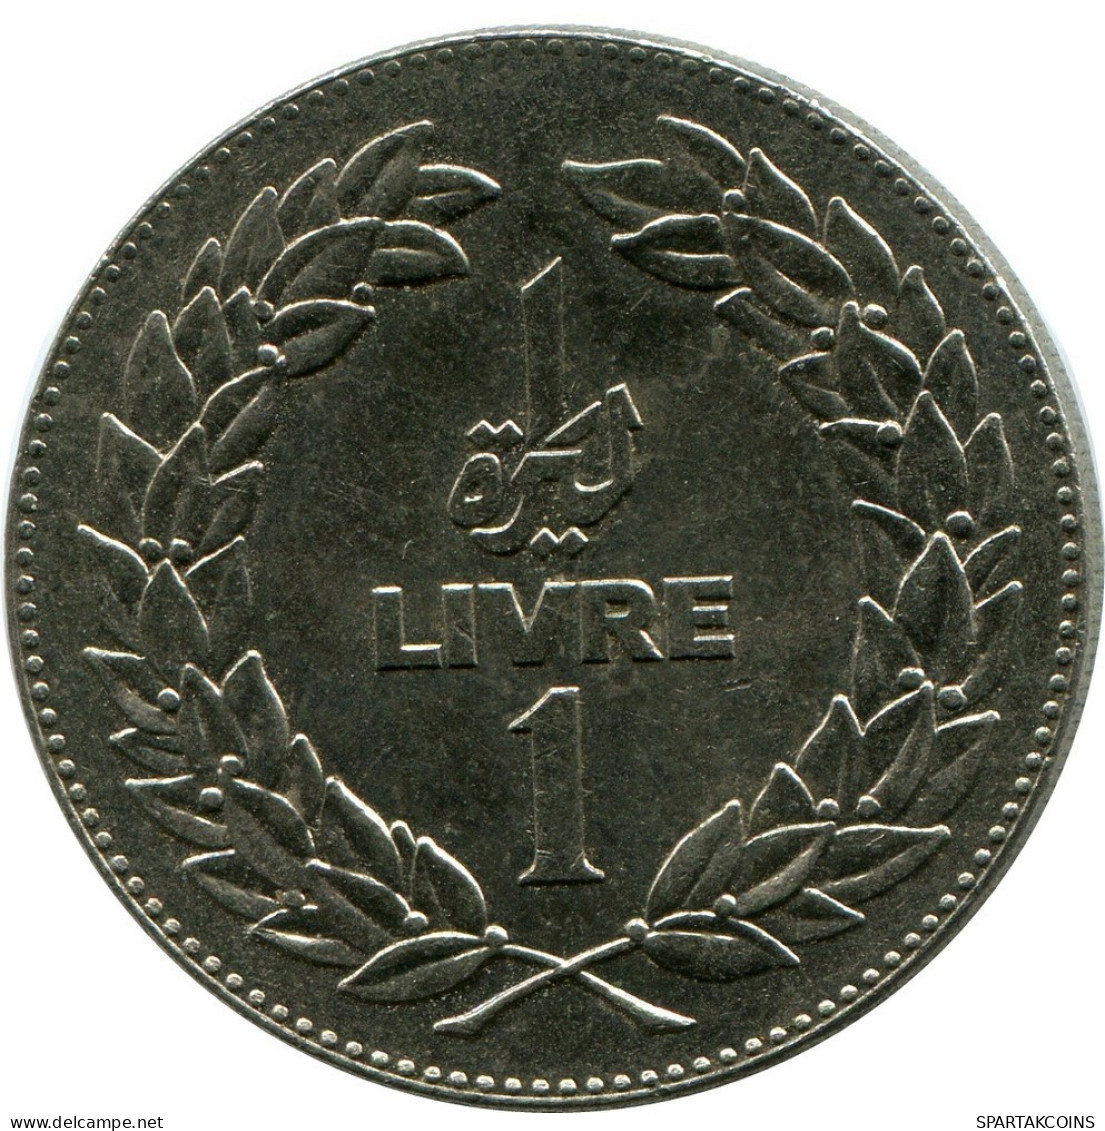 1 LIVRE 1980 LIRANESA LEBANON Moneda #AP378.E.A - Libano